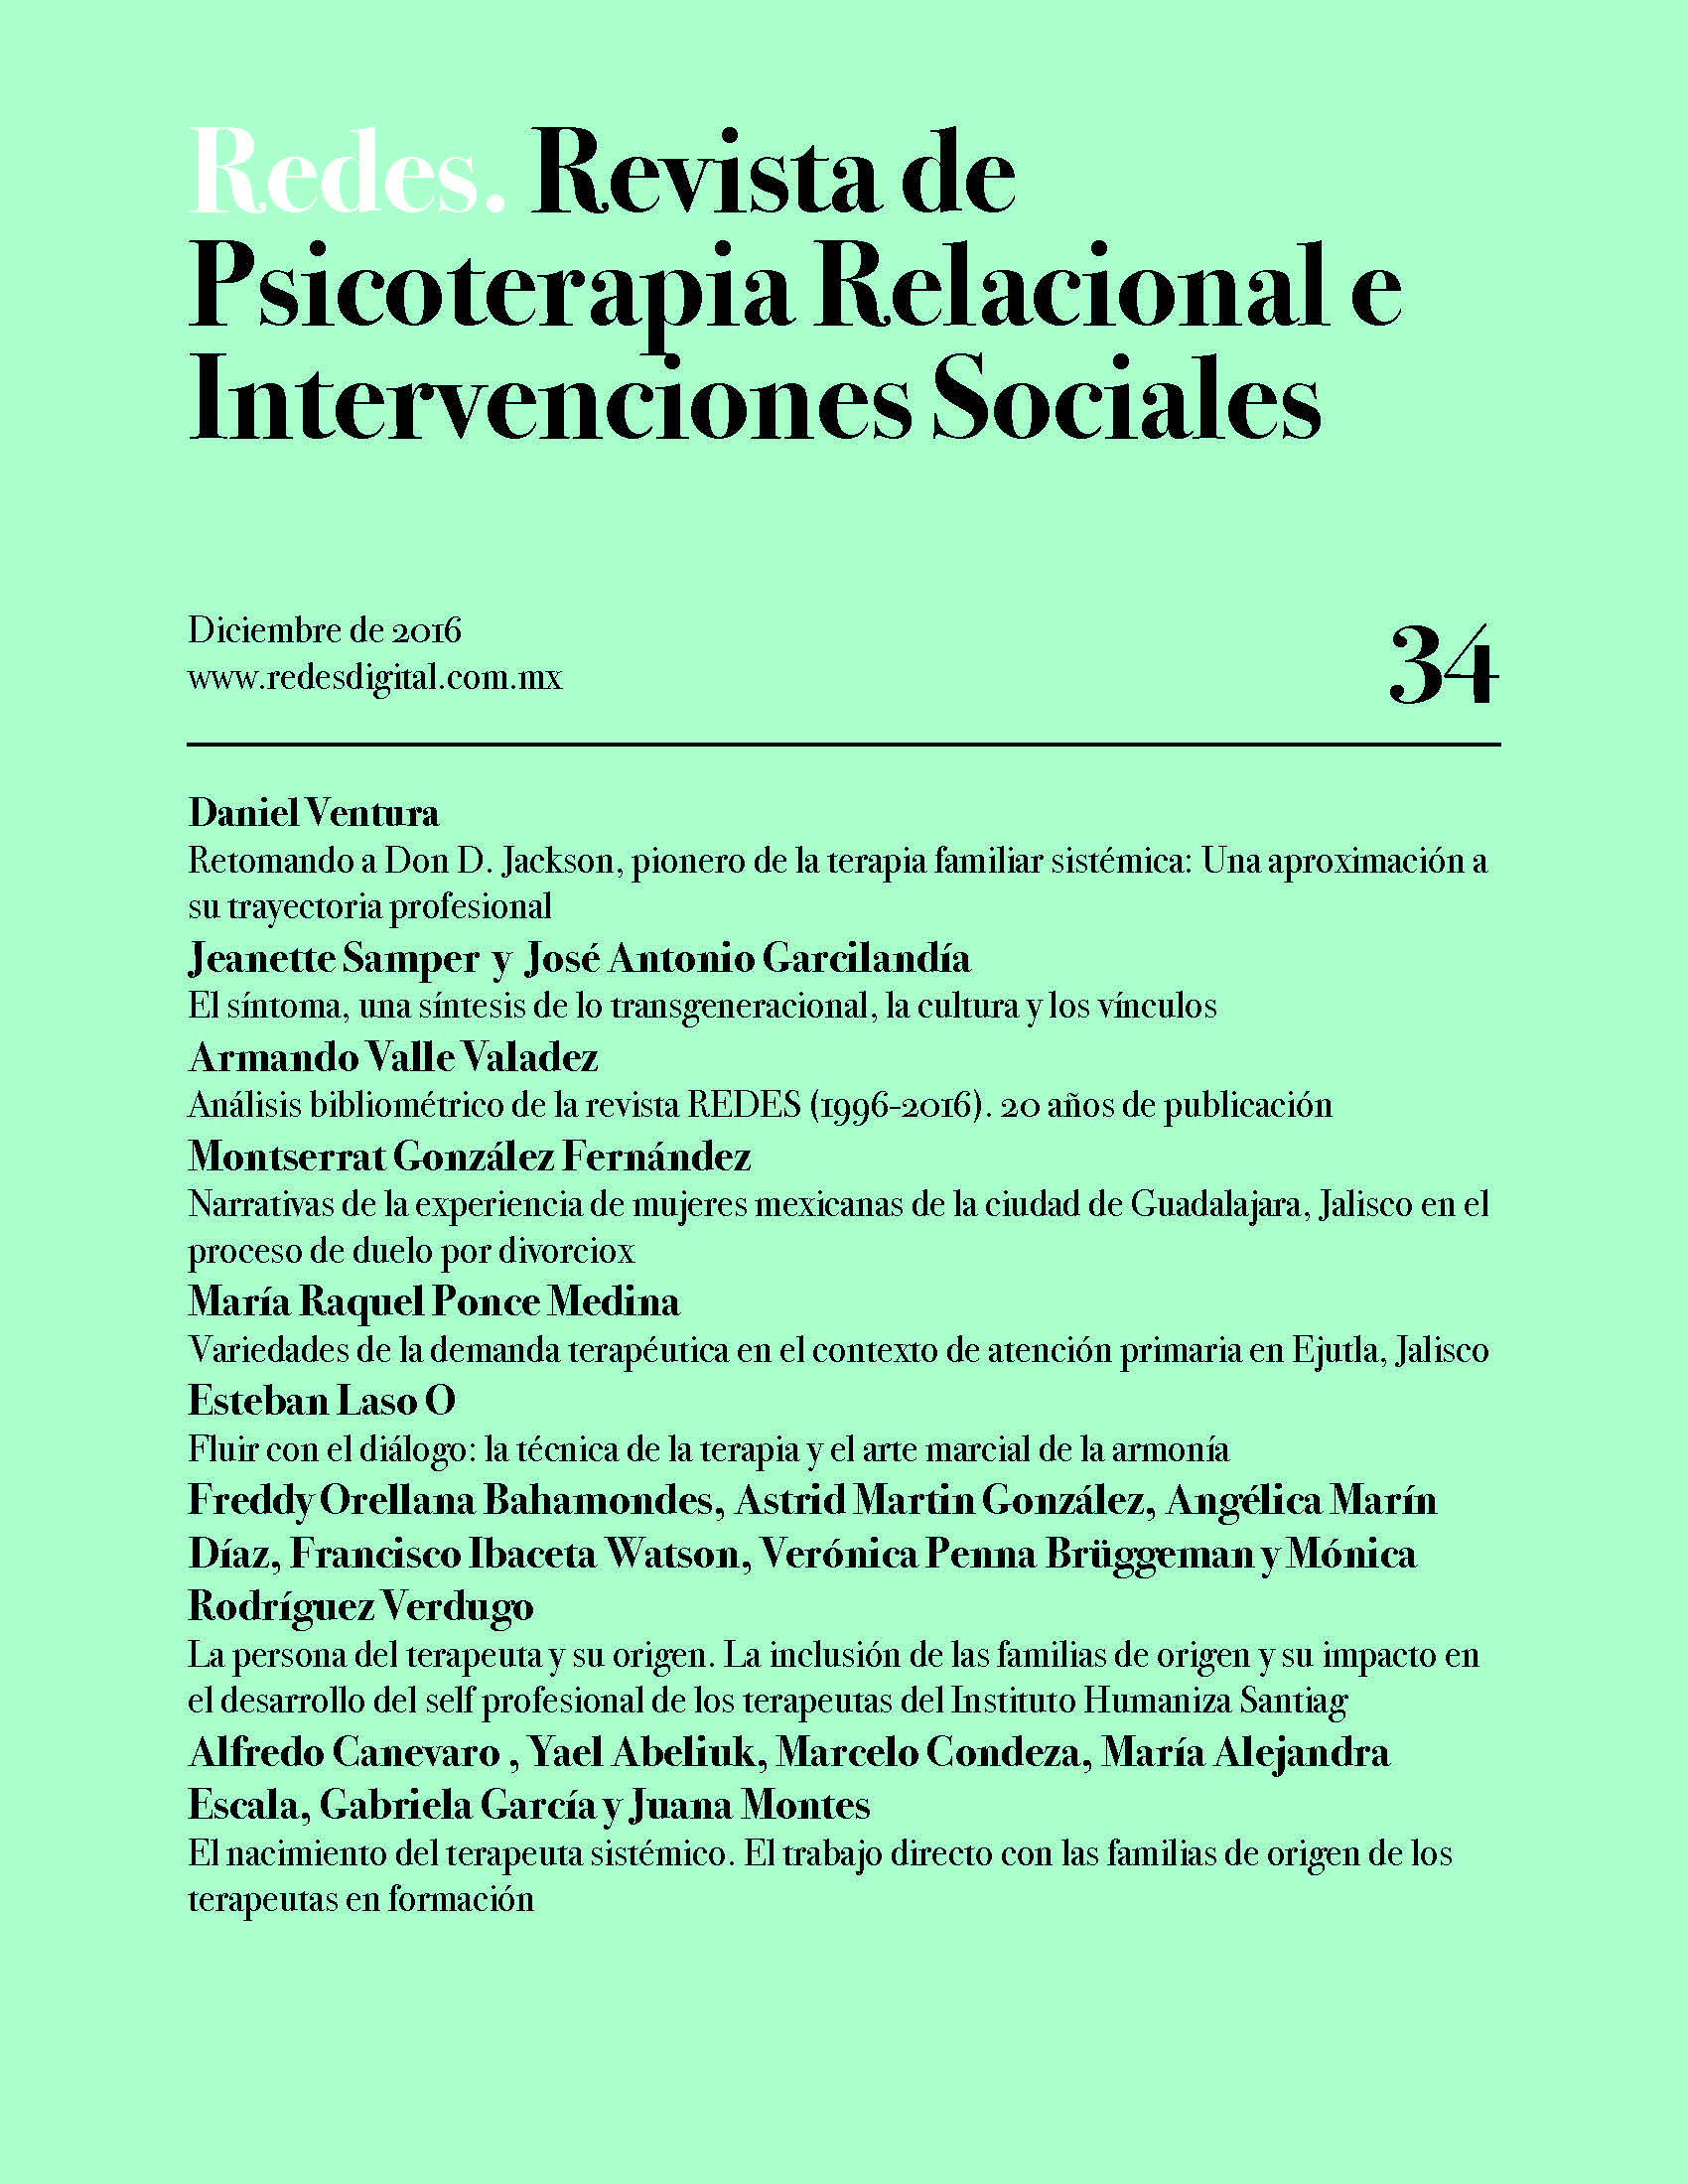 					Ver Núm. 34 (2016): Redes. Revista de Psicoterapia Relacional e Intervenciones Sociales. Diciembre, 2016
				